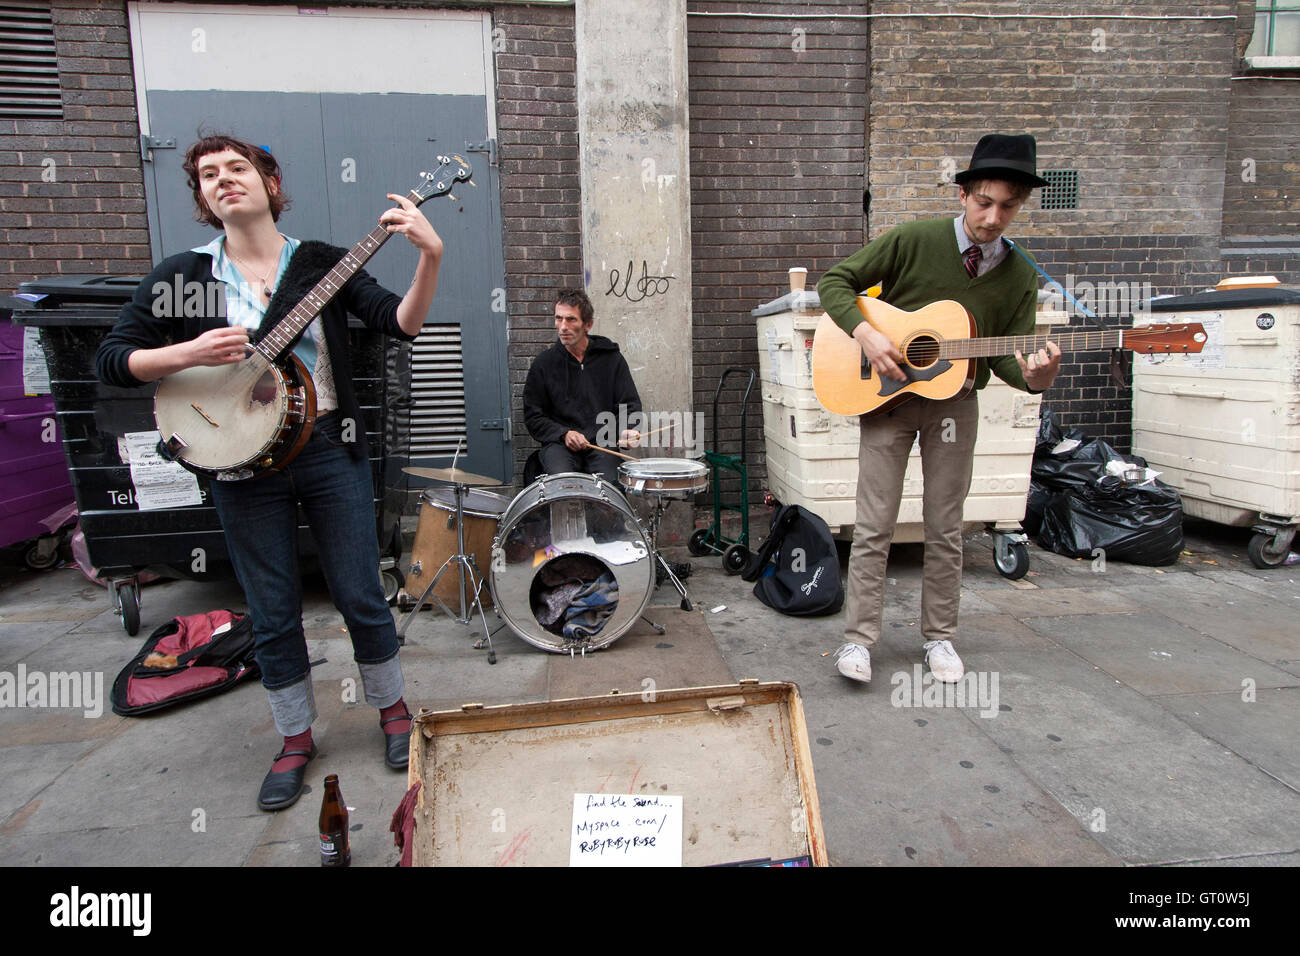 Les amuseurs publics jouant sur une rue, Brick Lane, Londres Banque D'Images